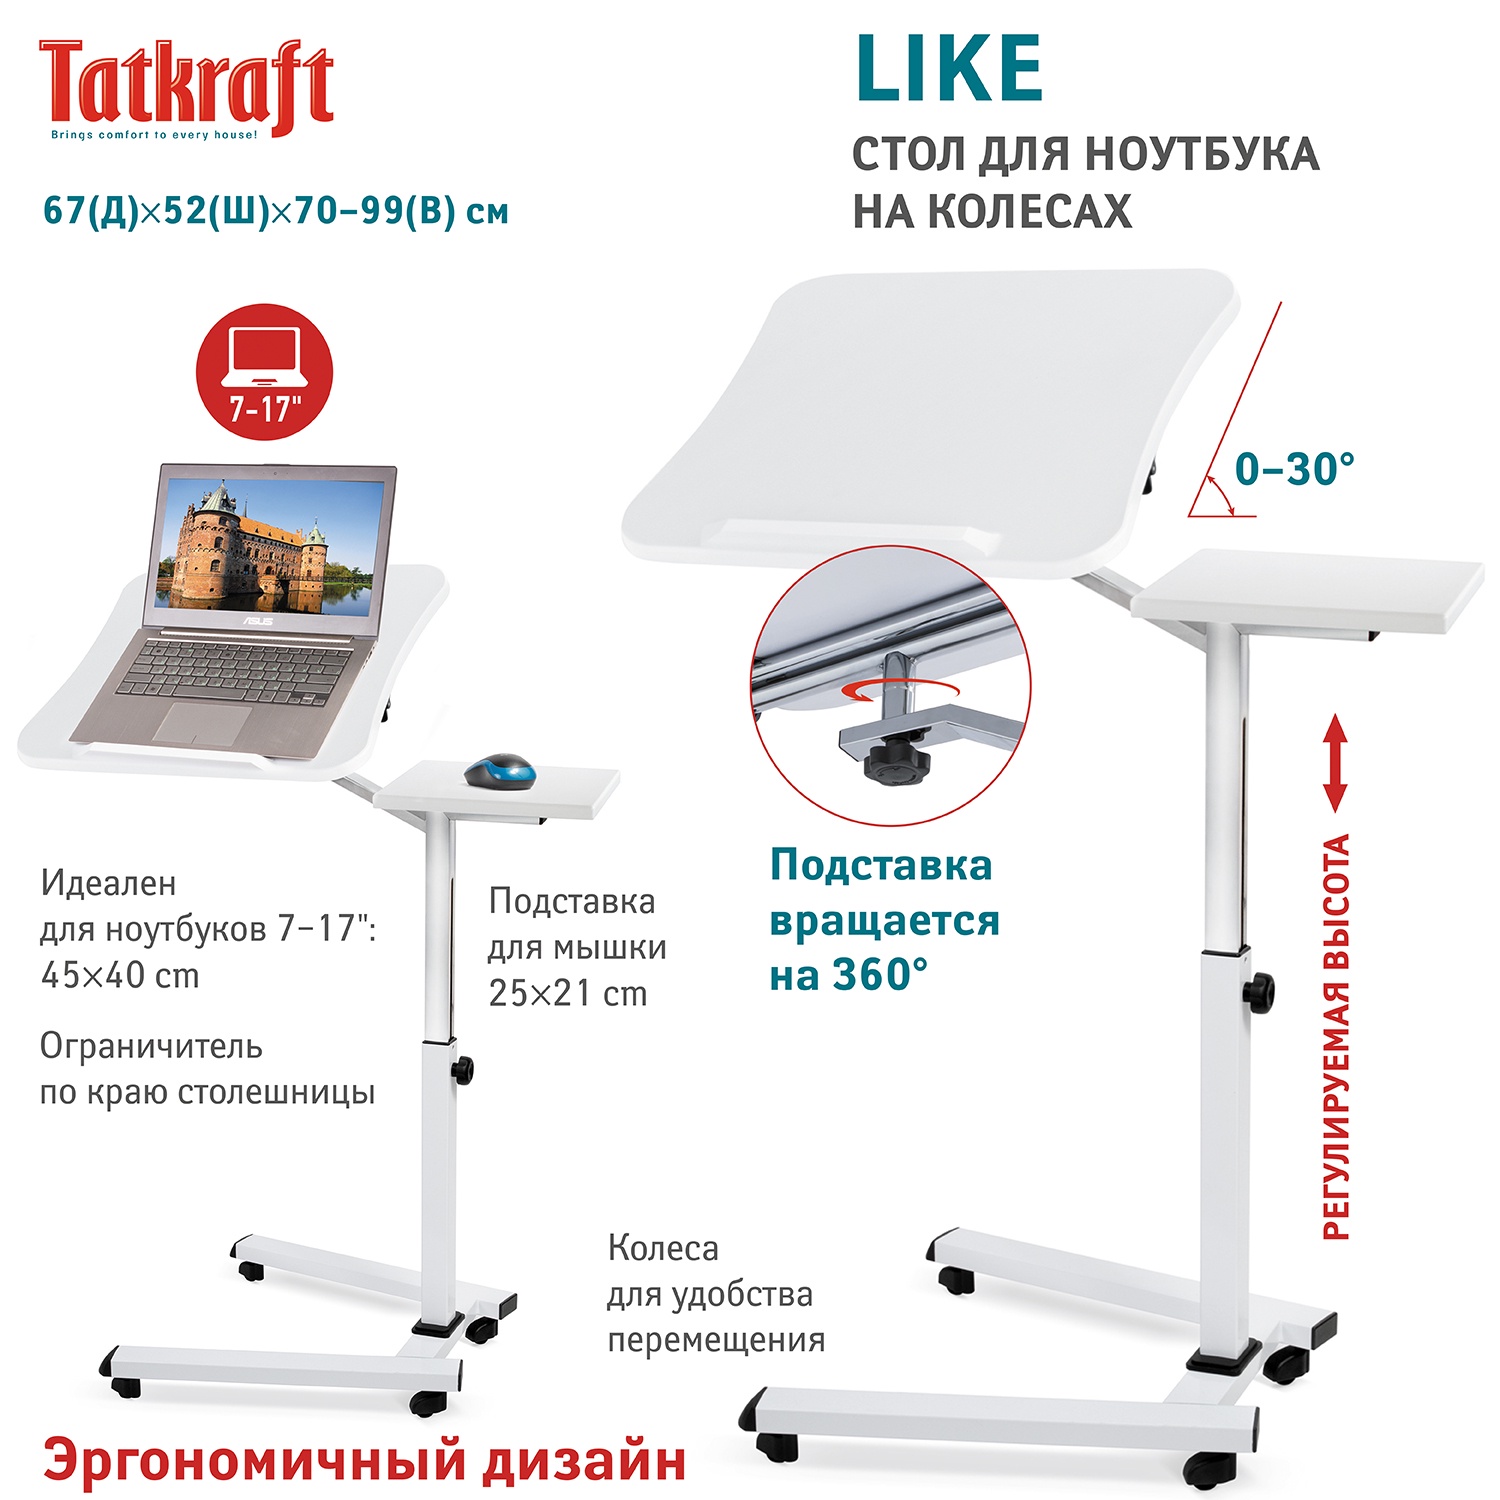 фото Tatkraft LIKE Стол для ноутбука, 67x70-99.5x52 cm